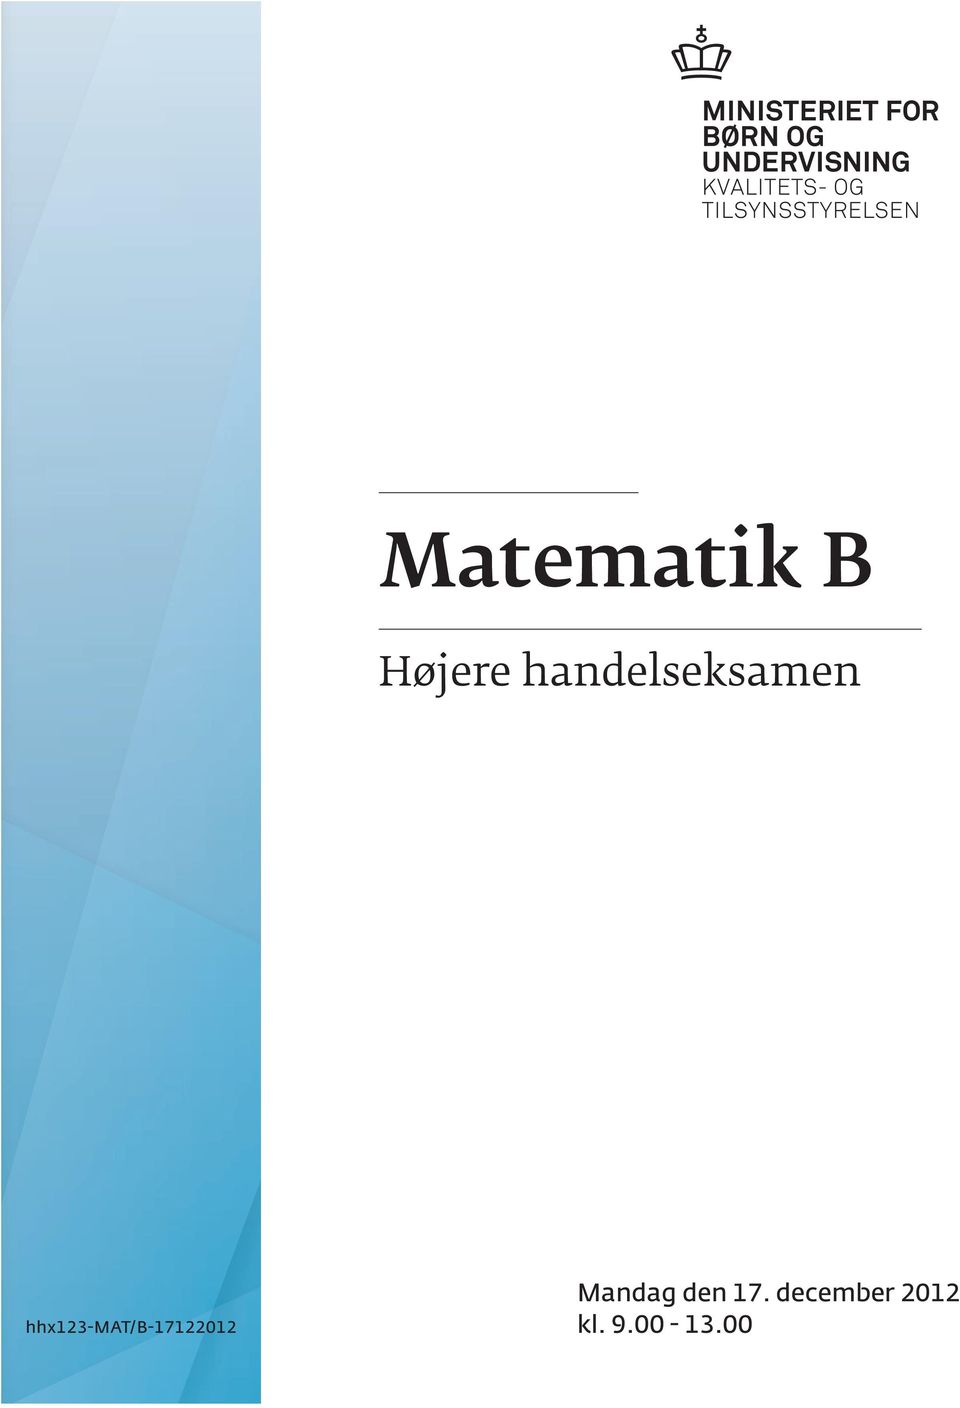 hh123-mat/b-17122012